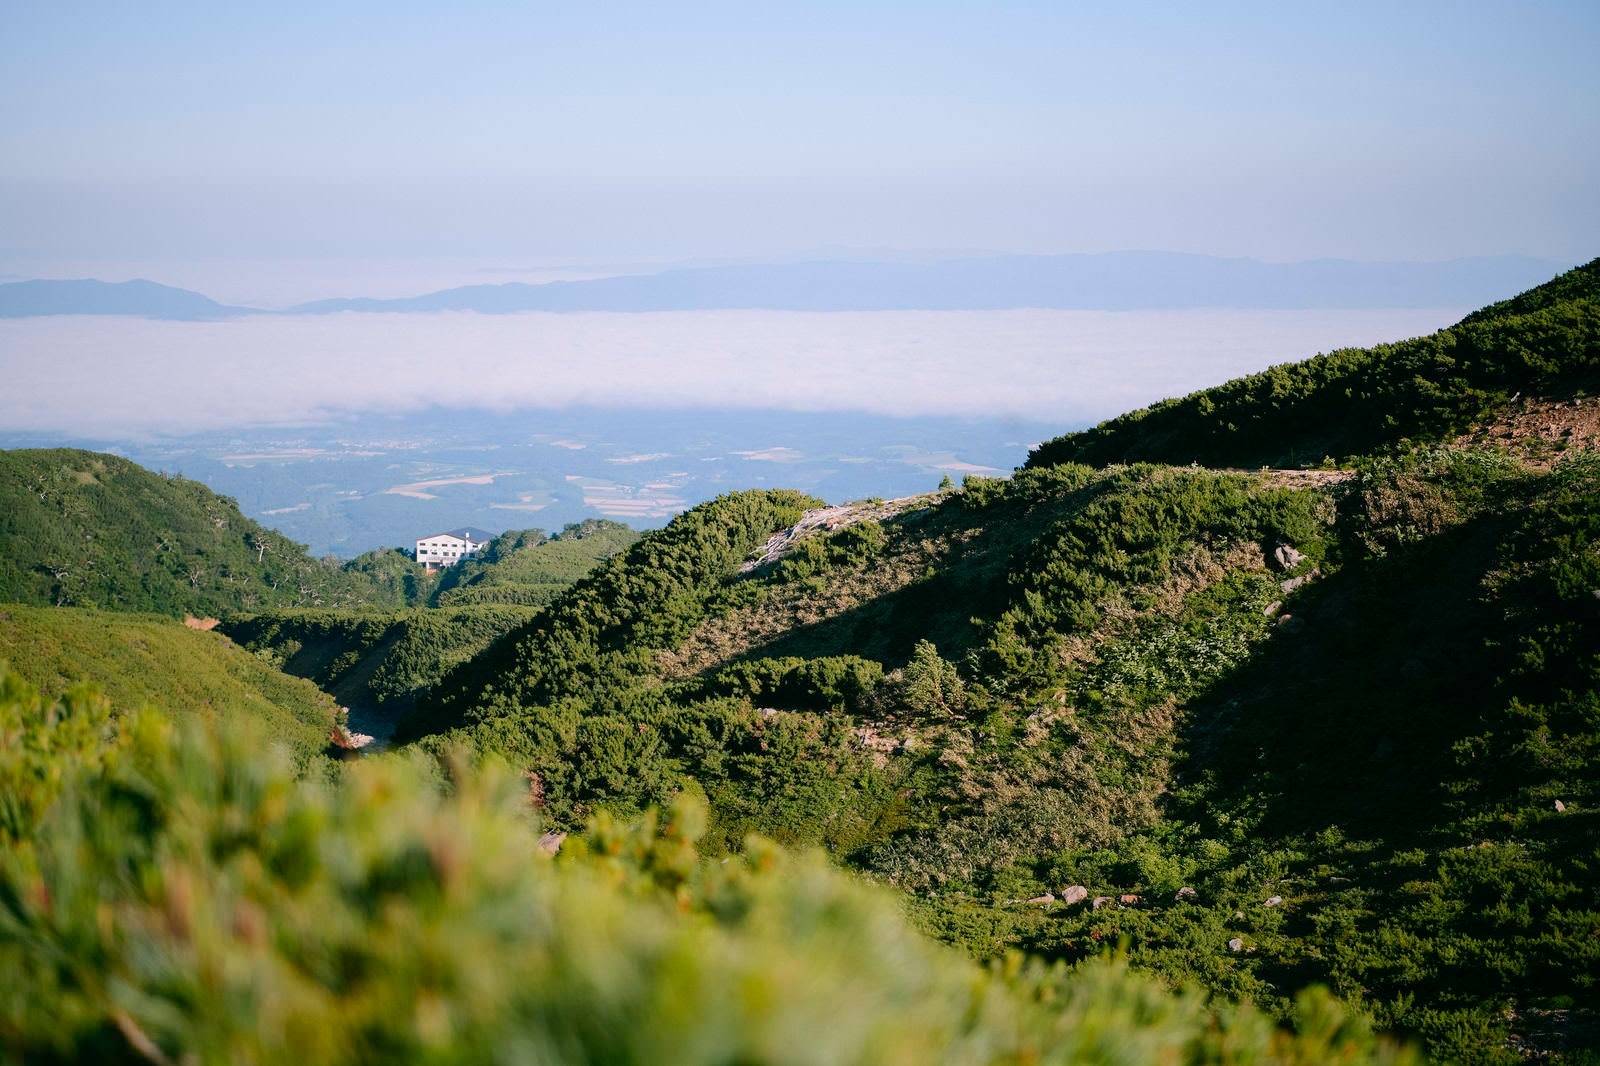 「山中の十勝岳温泉遠景」の写真